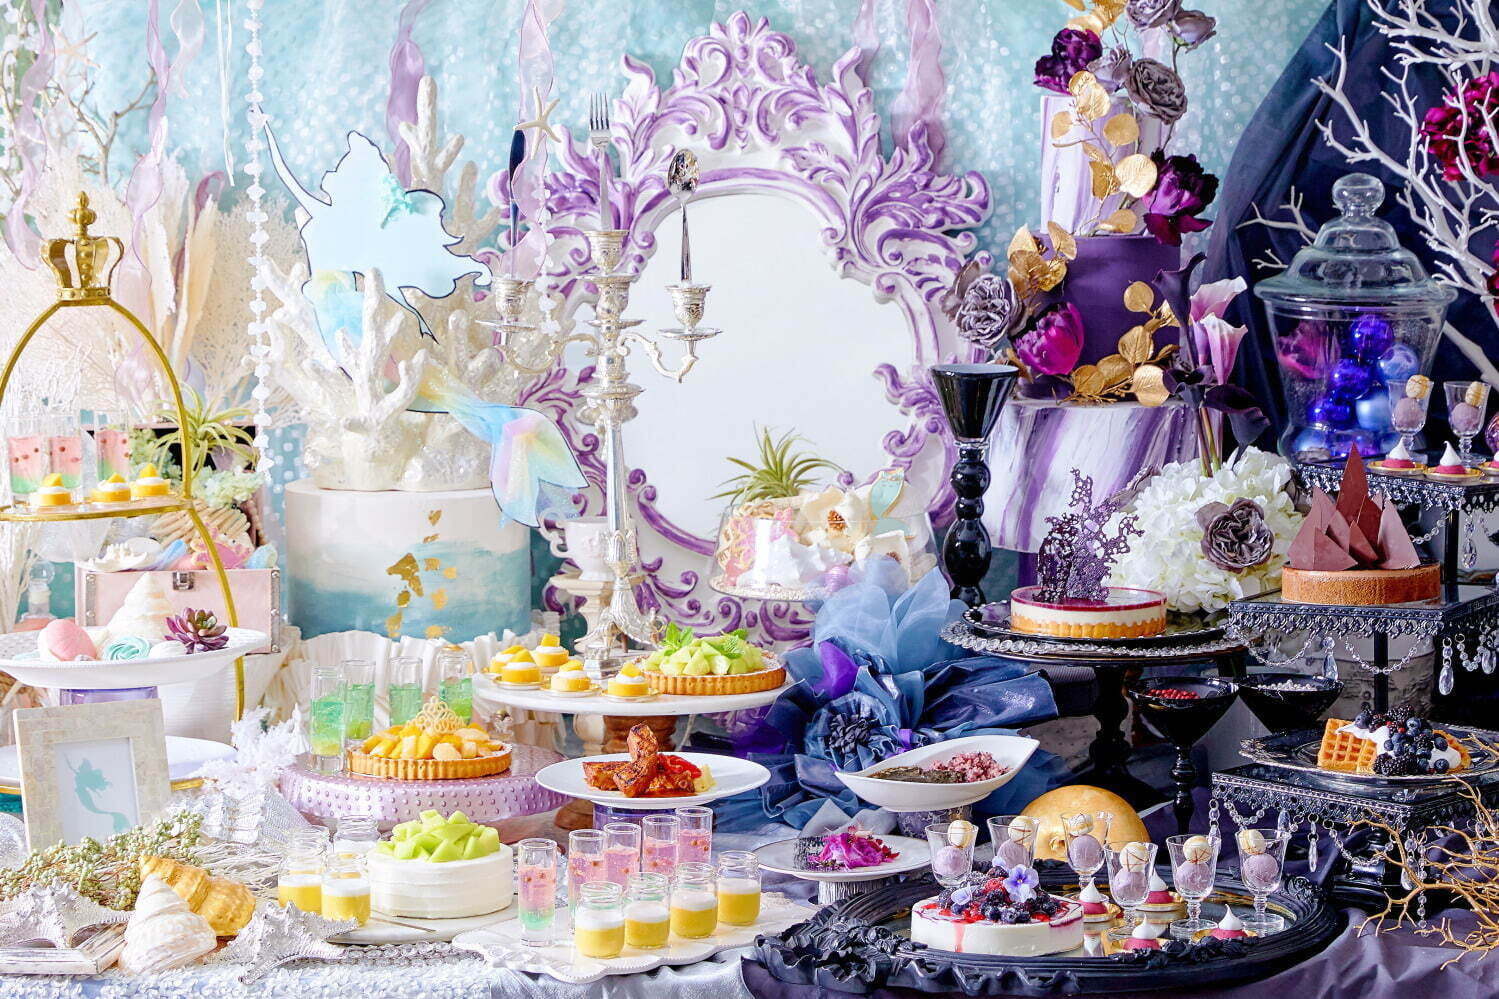 人魚姫 イメージの スイーツビュッフェ ザ ストリングス 表参道で 魔女を表現したケーキなど ファッションプレス